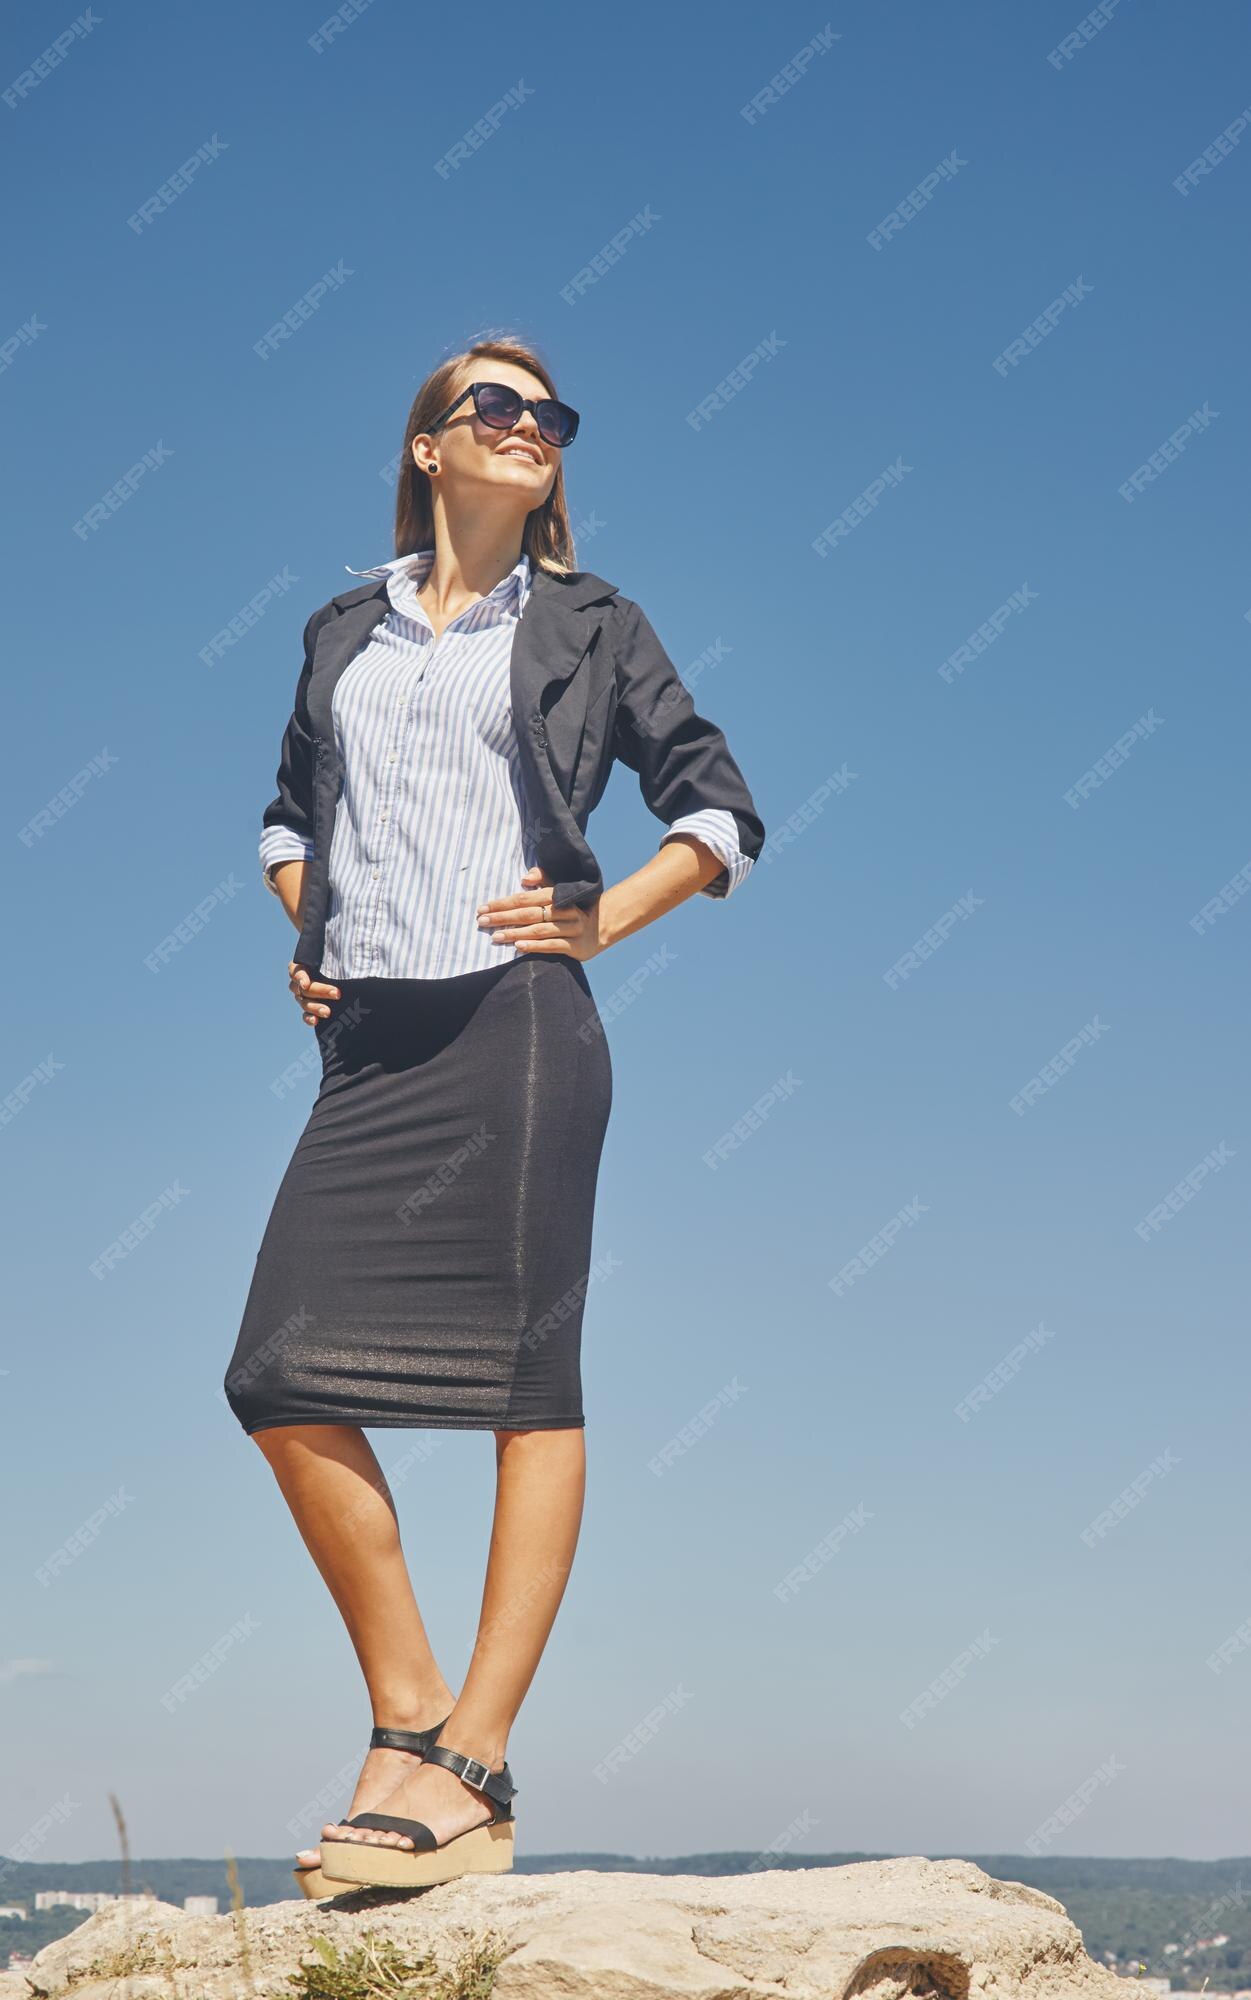 con chaqueta de manga corta, blusa blanca y falda negra hasta la rodilla con gafas de sol | Foto Premium